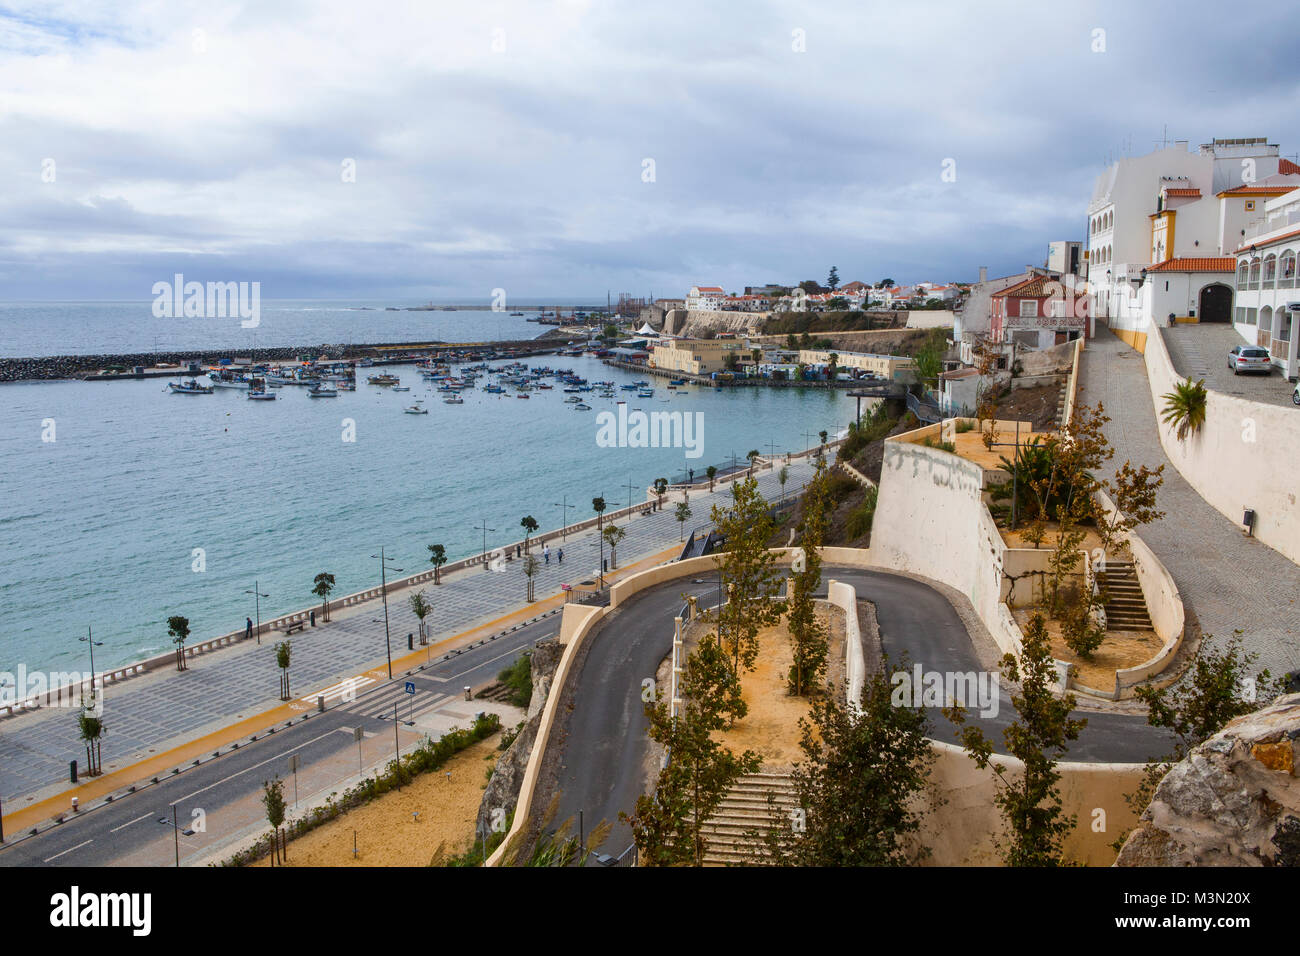 SINES, PORTUGAL - 11 octobre, 2015 : Vue de Praia Vasco da Gama à Sines, au Portugal. Banque D'Images